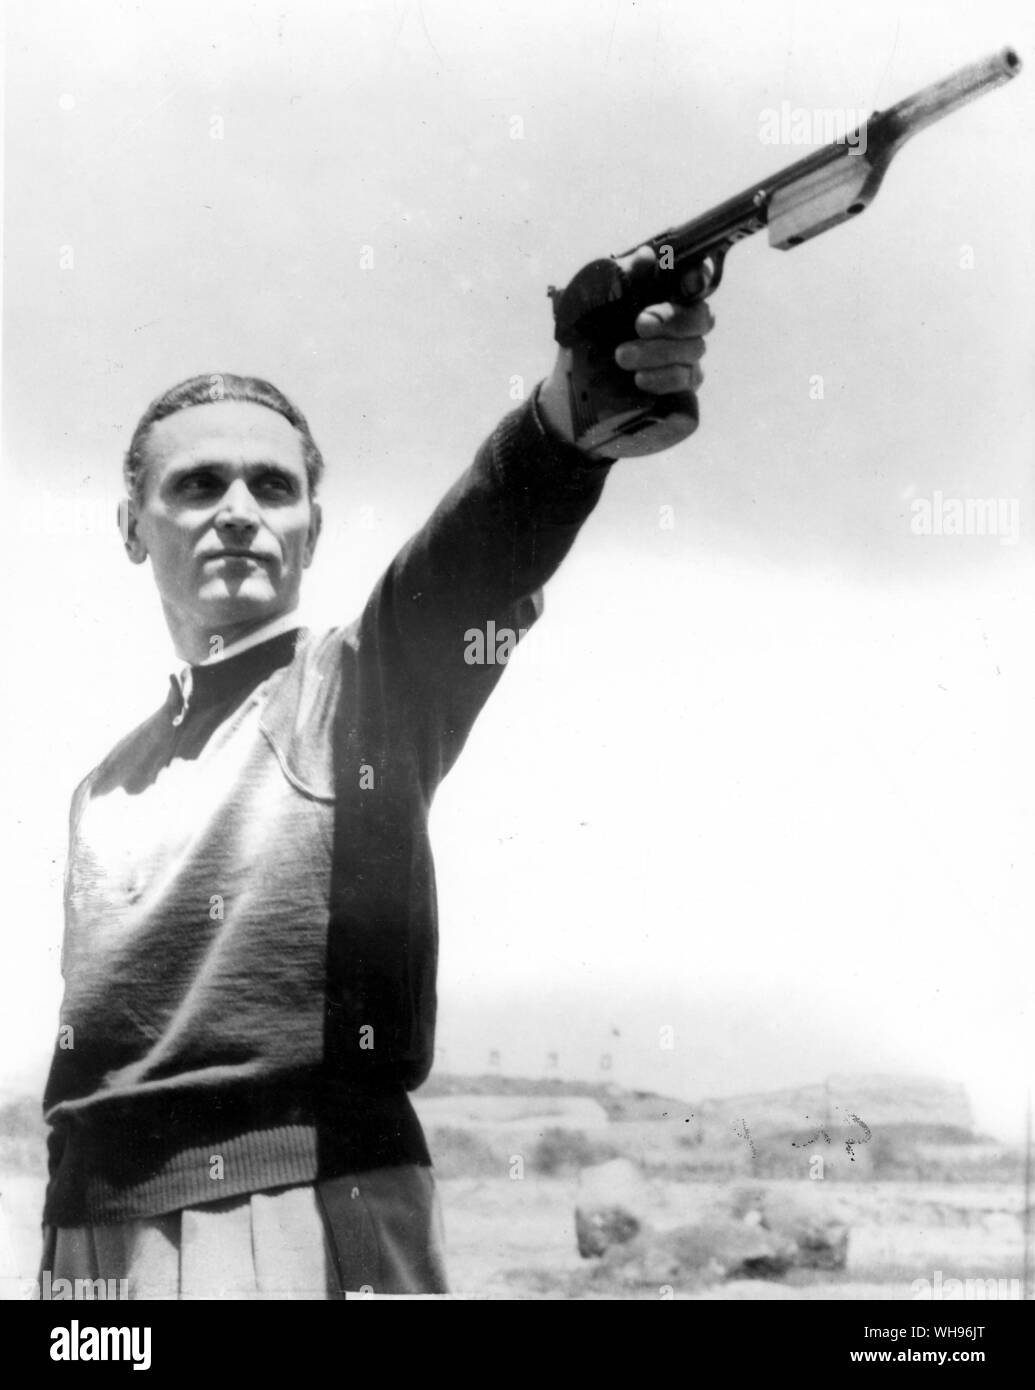 Aus., Melbourne, Olympics, 1956: Karoly Takacs von Ungarn, Gewinner der olympischen silhouette Veranstaltung in 1948 und 1952, hier in Aktion während der 1956 Veranstaltung gesehen. Er verlor seinen Arm im Zweiten Weltkrieg 2 Und nun schiesst Linkshändig.. Stockfoto